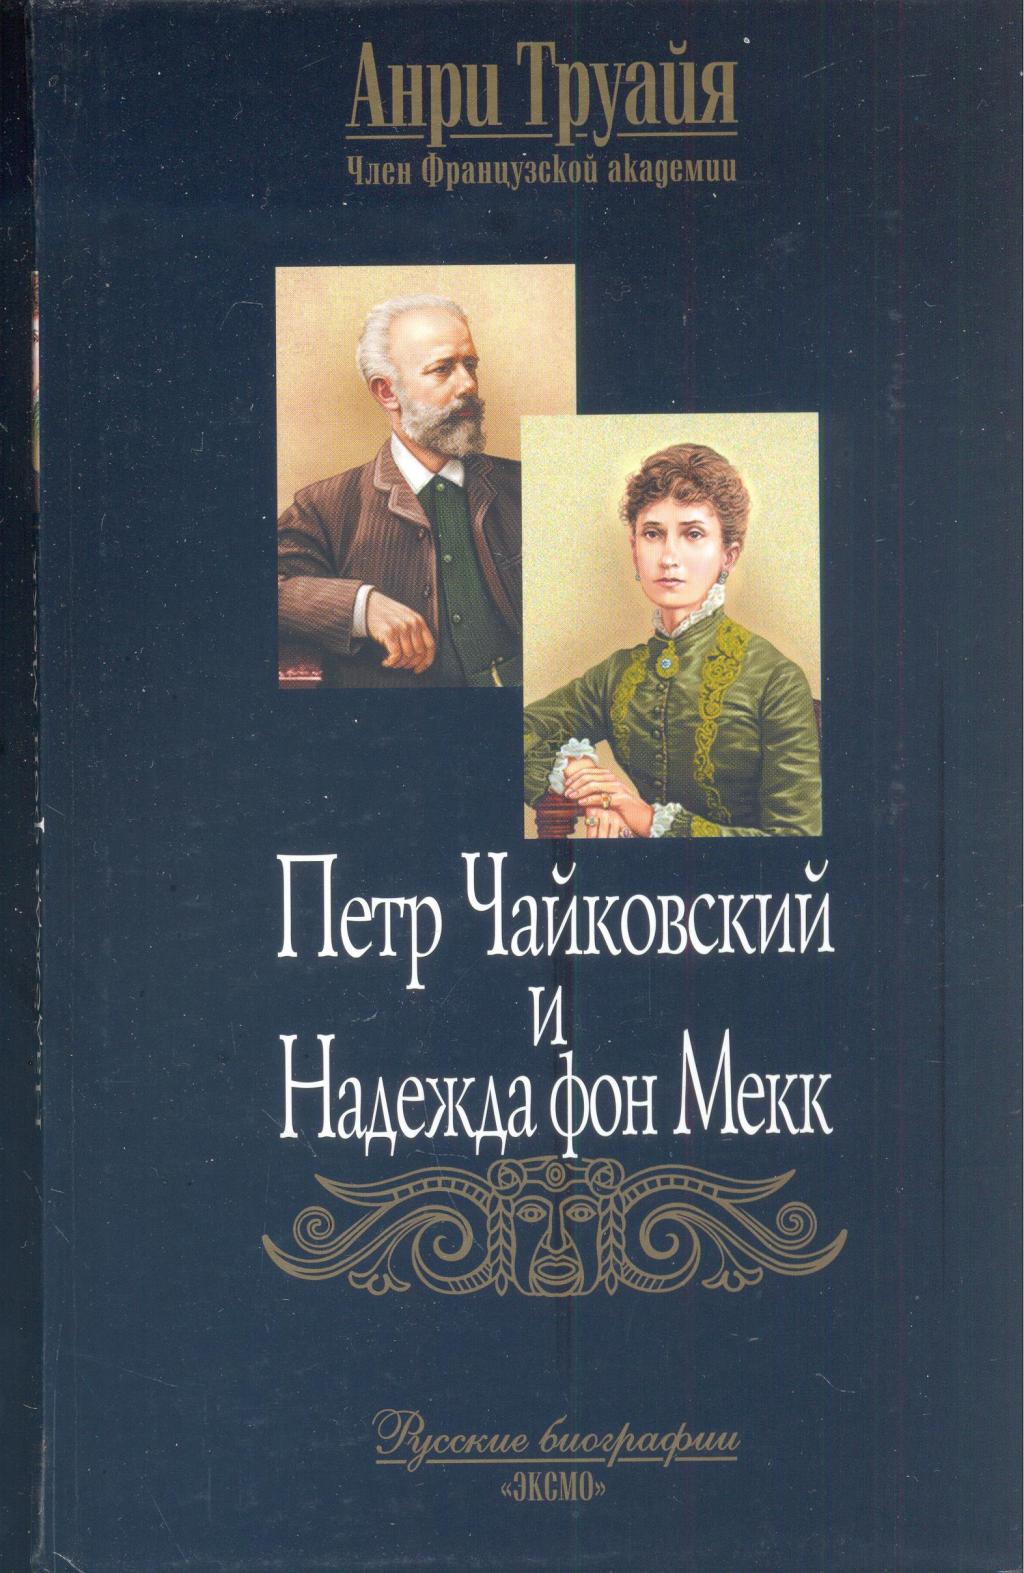 Пётр Чайковский и Надежда фон Мекк